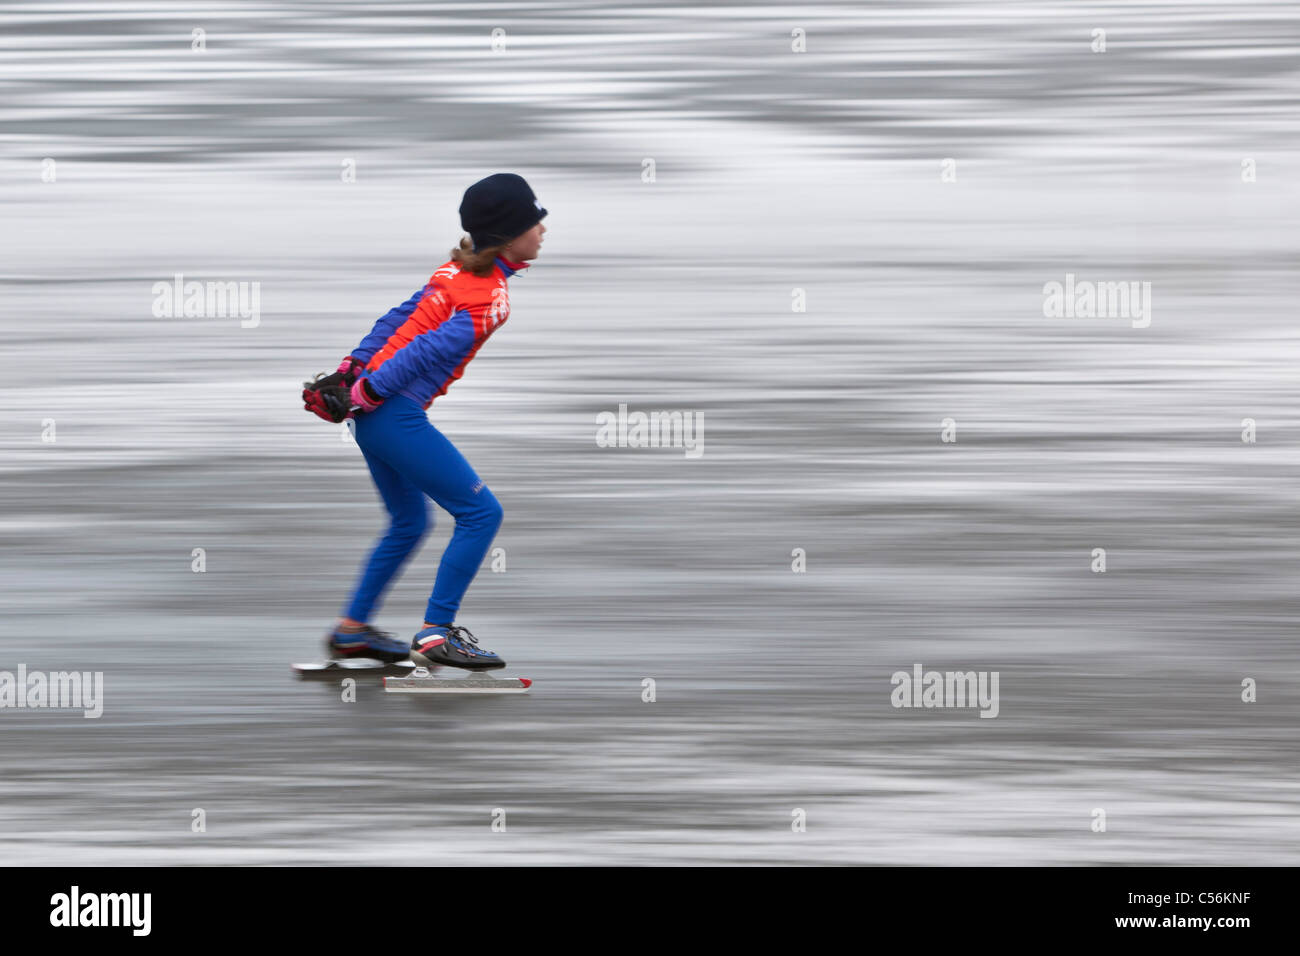 Les Pays-Bas, l'Ankeveen. Fille du patinage sur glace. Flou de mouvement. Banque D'Images